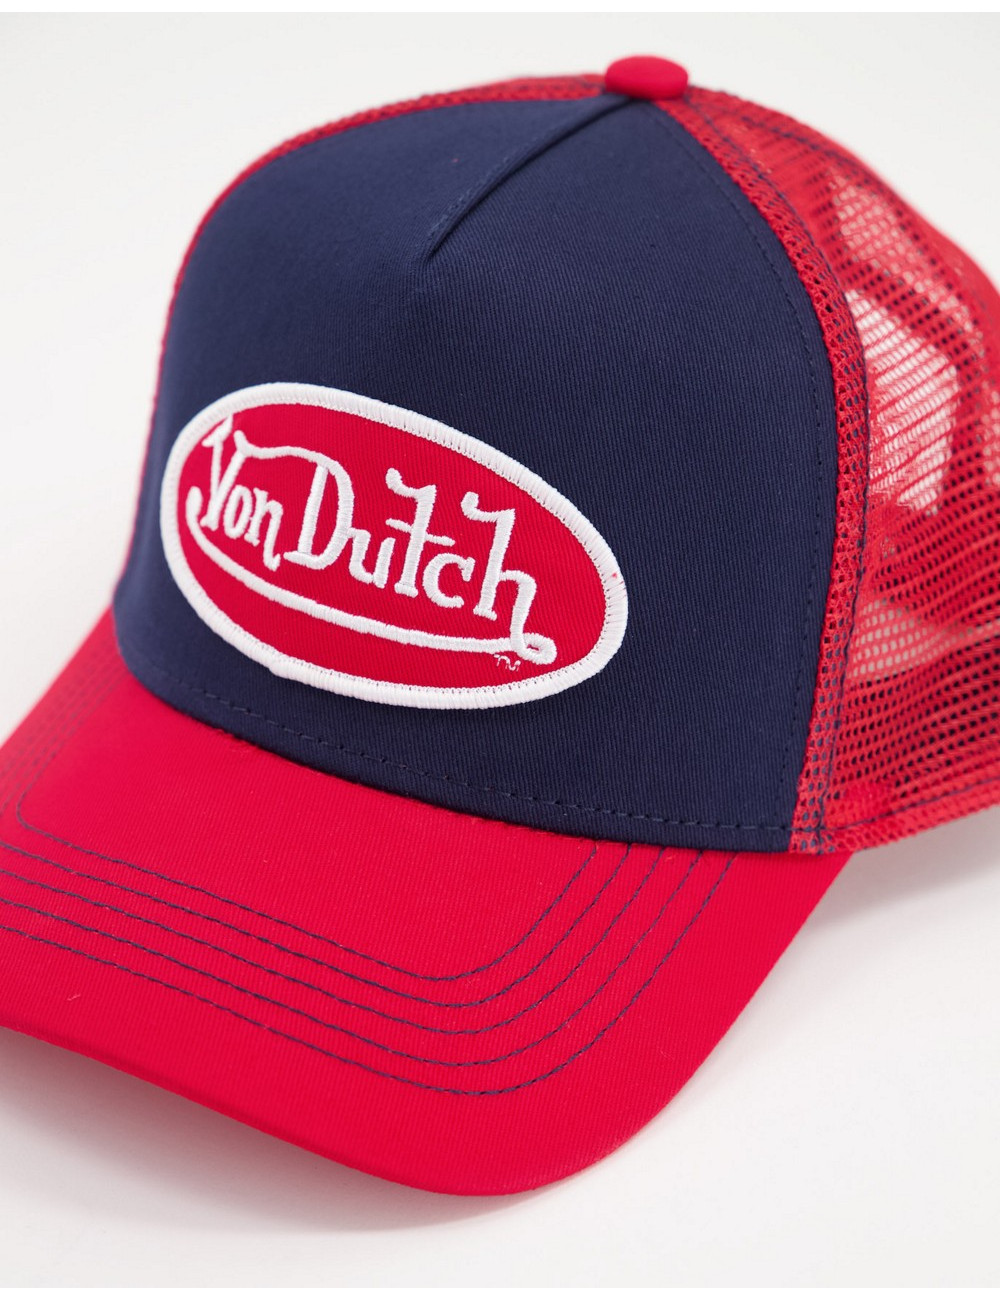 Von Dutch trucker cap in red